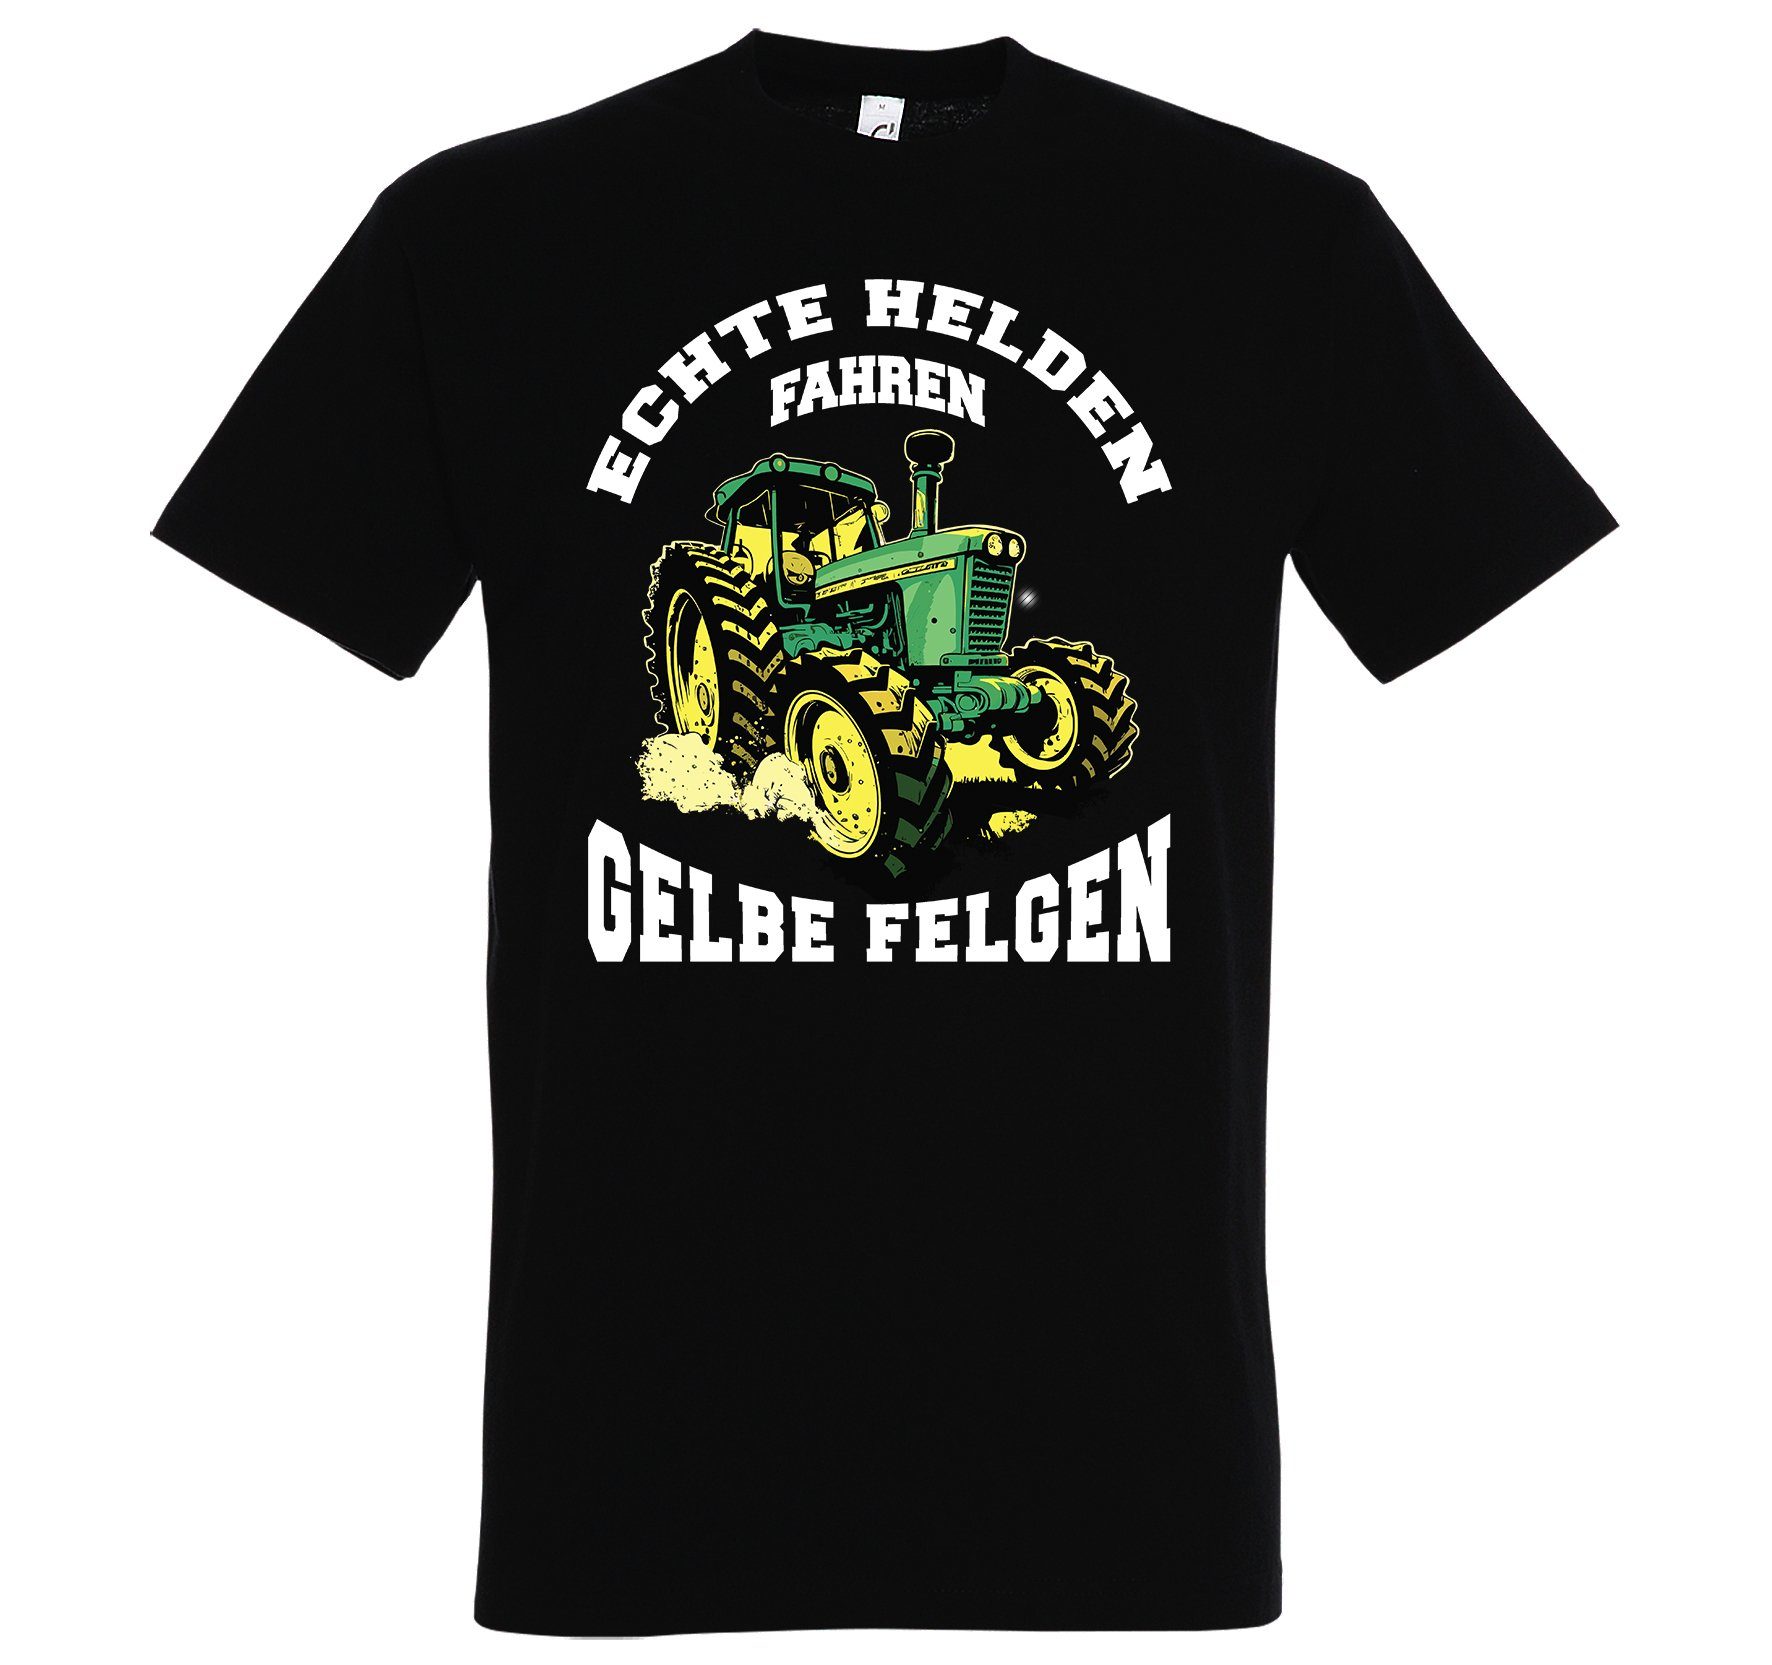 Youth Designz Print-Shirt "Echte Helden fahren gelbe Felgen" Herren T-Shirt mit lustigem Spruch Schwarz